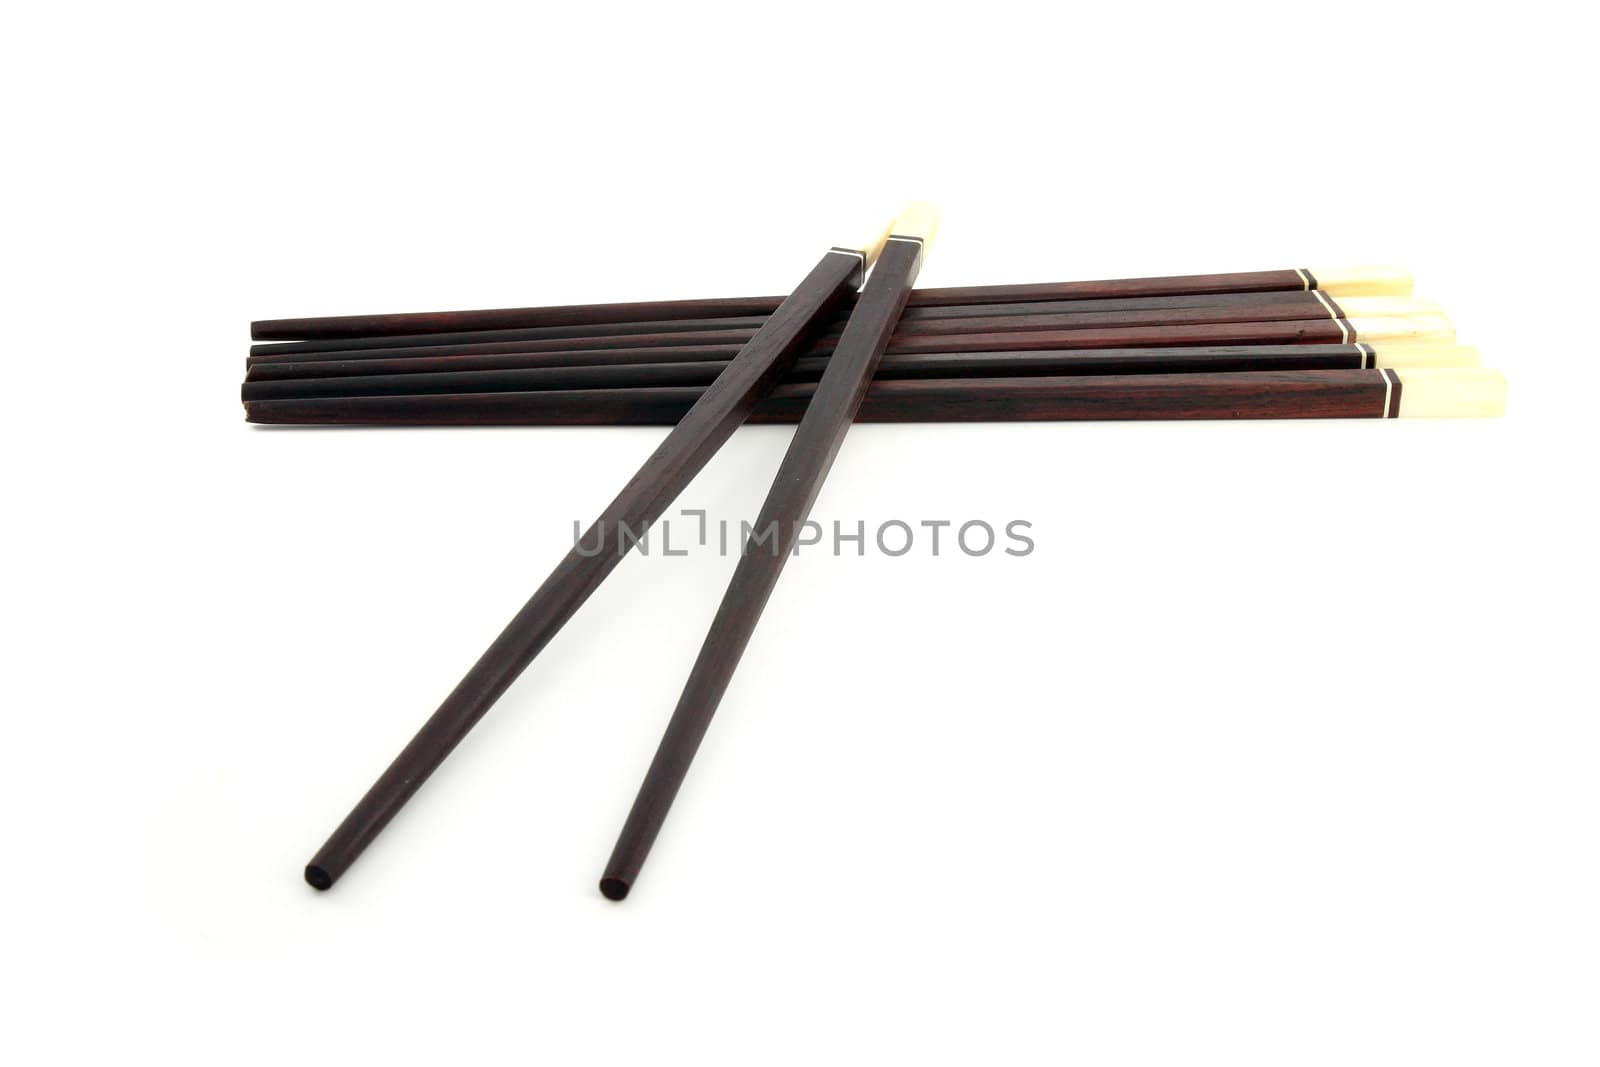 Thai wooden chopsticks on white background